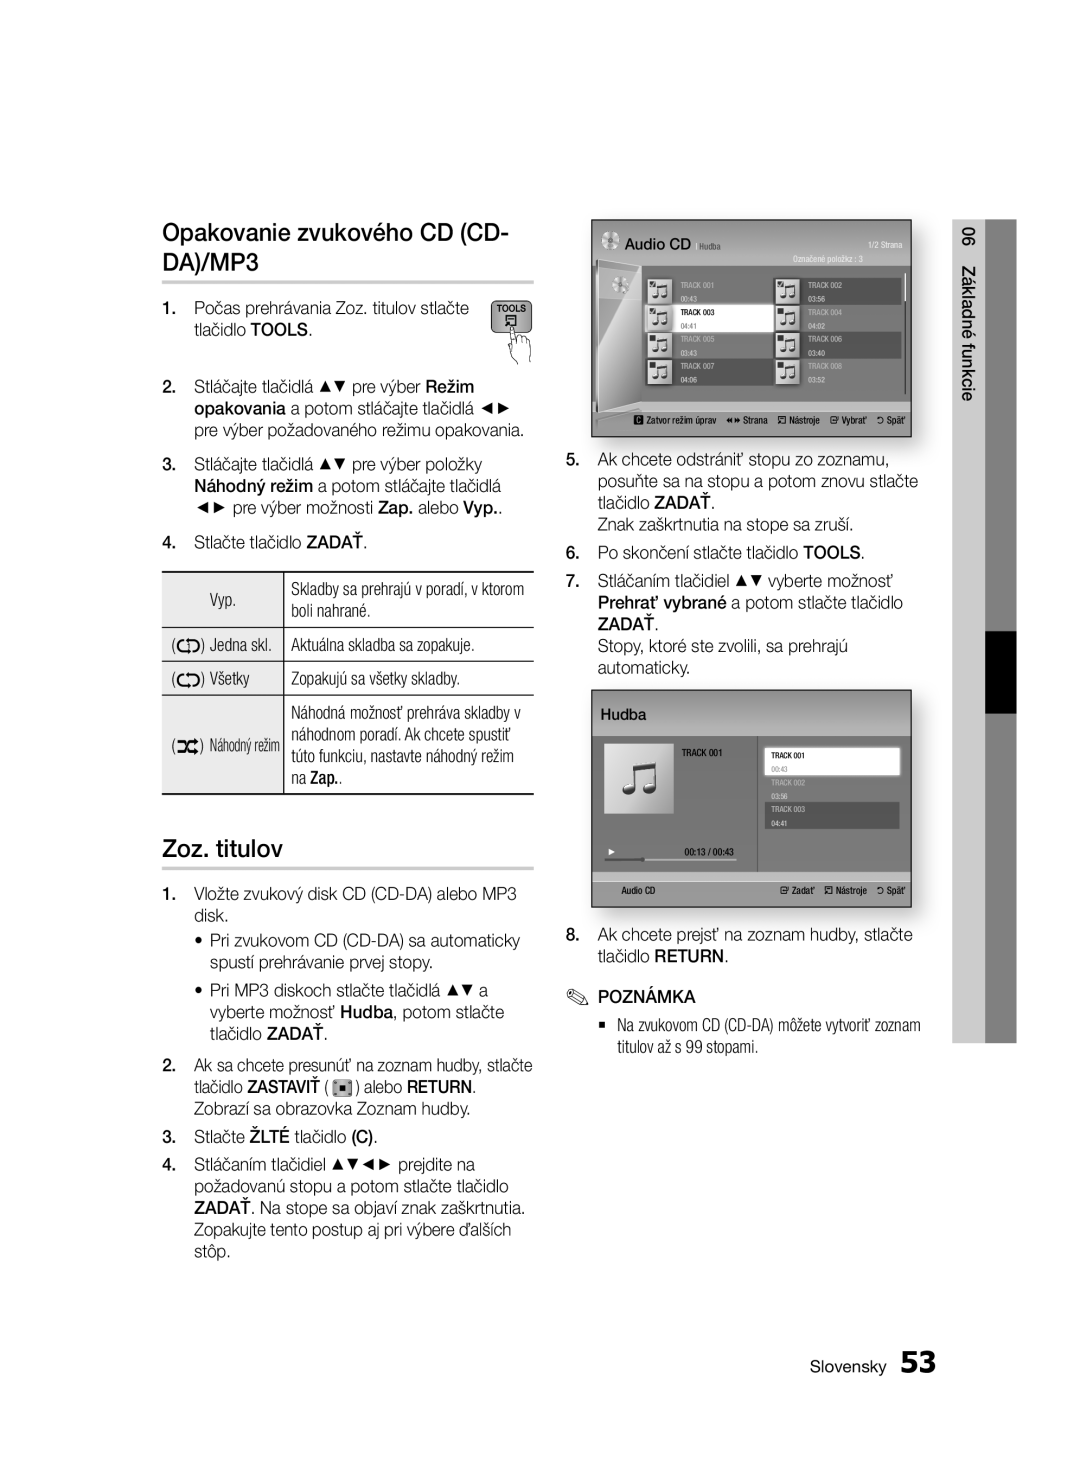 Samsung BD-E6300/EN manual Opakovanie zvukového CD CD- DA/MP3, Zoz. titulov, Skladby sa prehrajú v poradí, v ktorom 